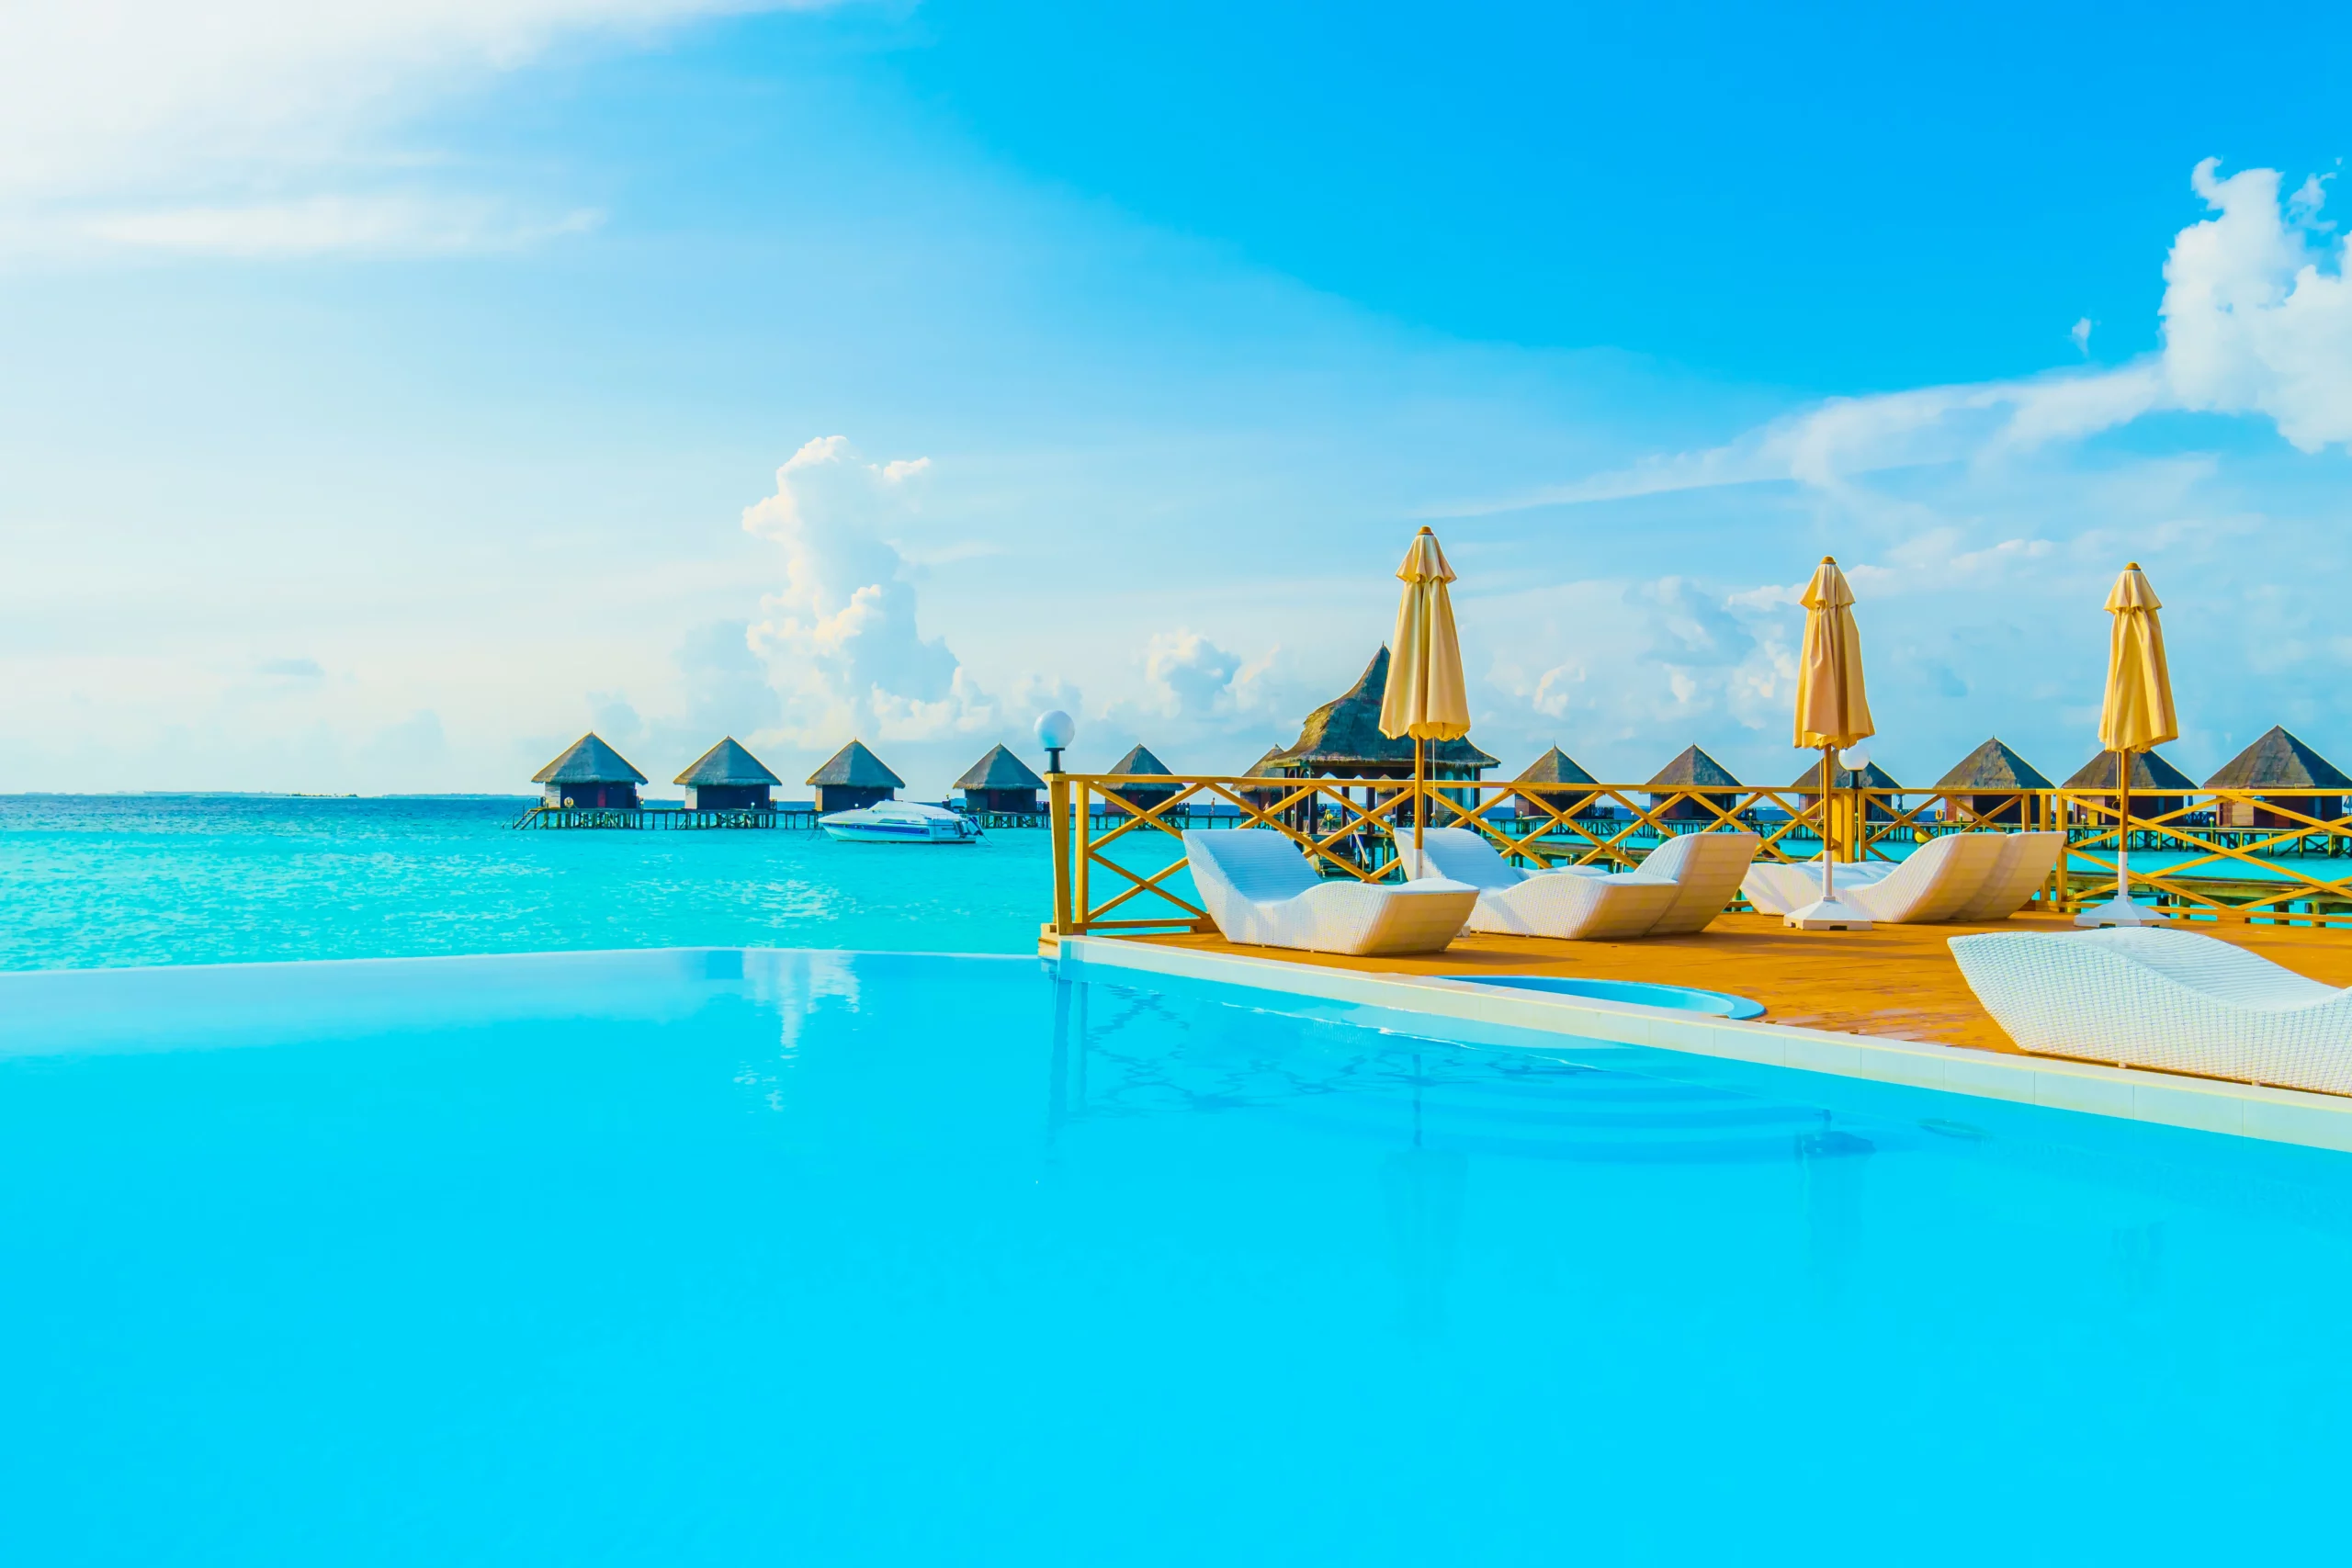 Maldives Archipelago -Top 5 Most Romantic Honeymoon Destinations